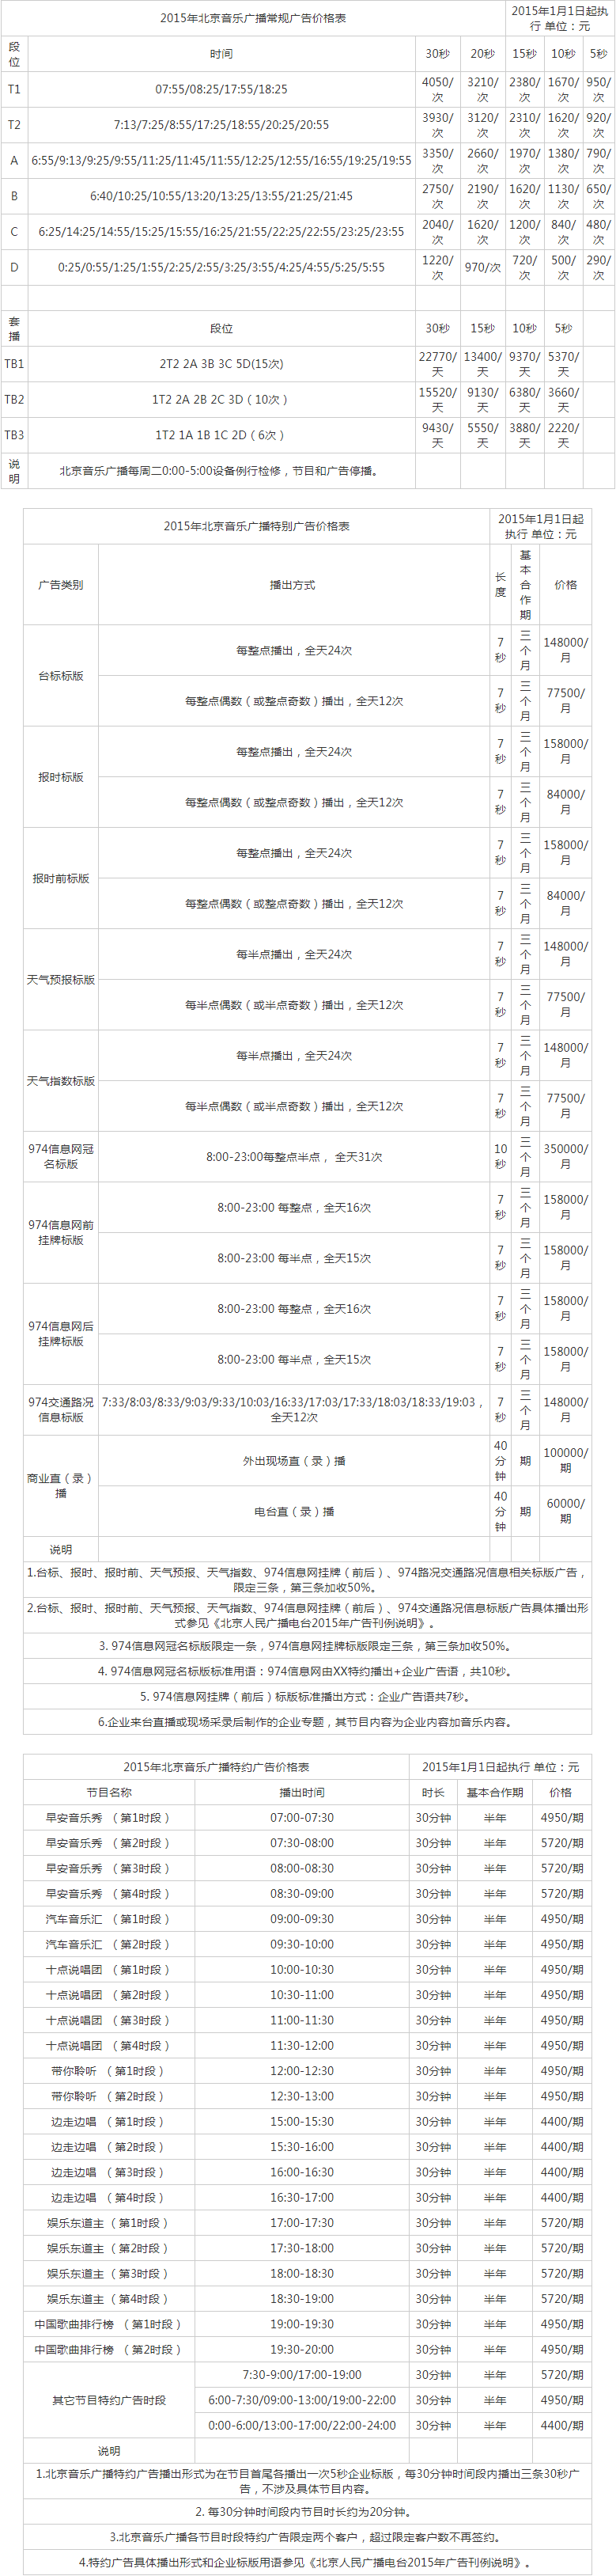 2015北京人民广播电台音乐台 FM97.4广告报价表.png